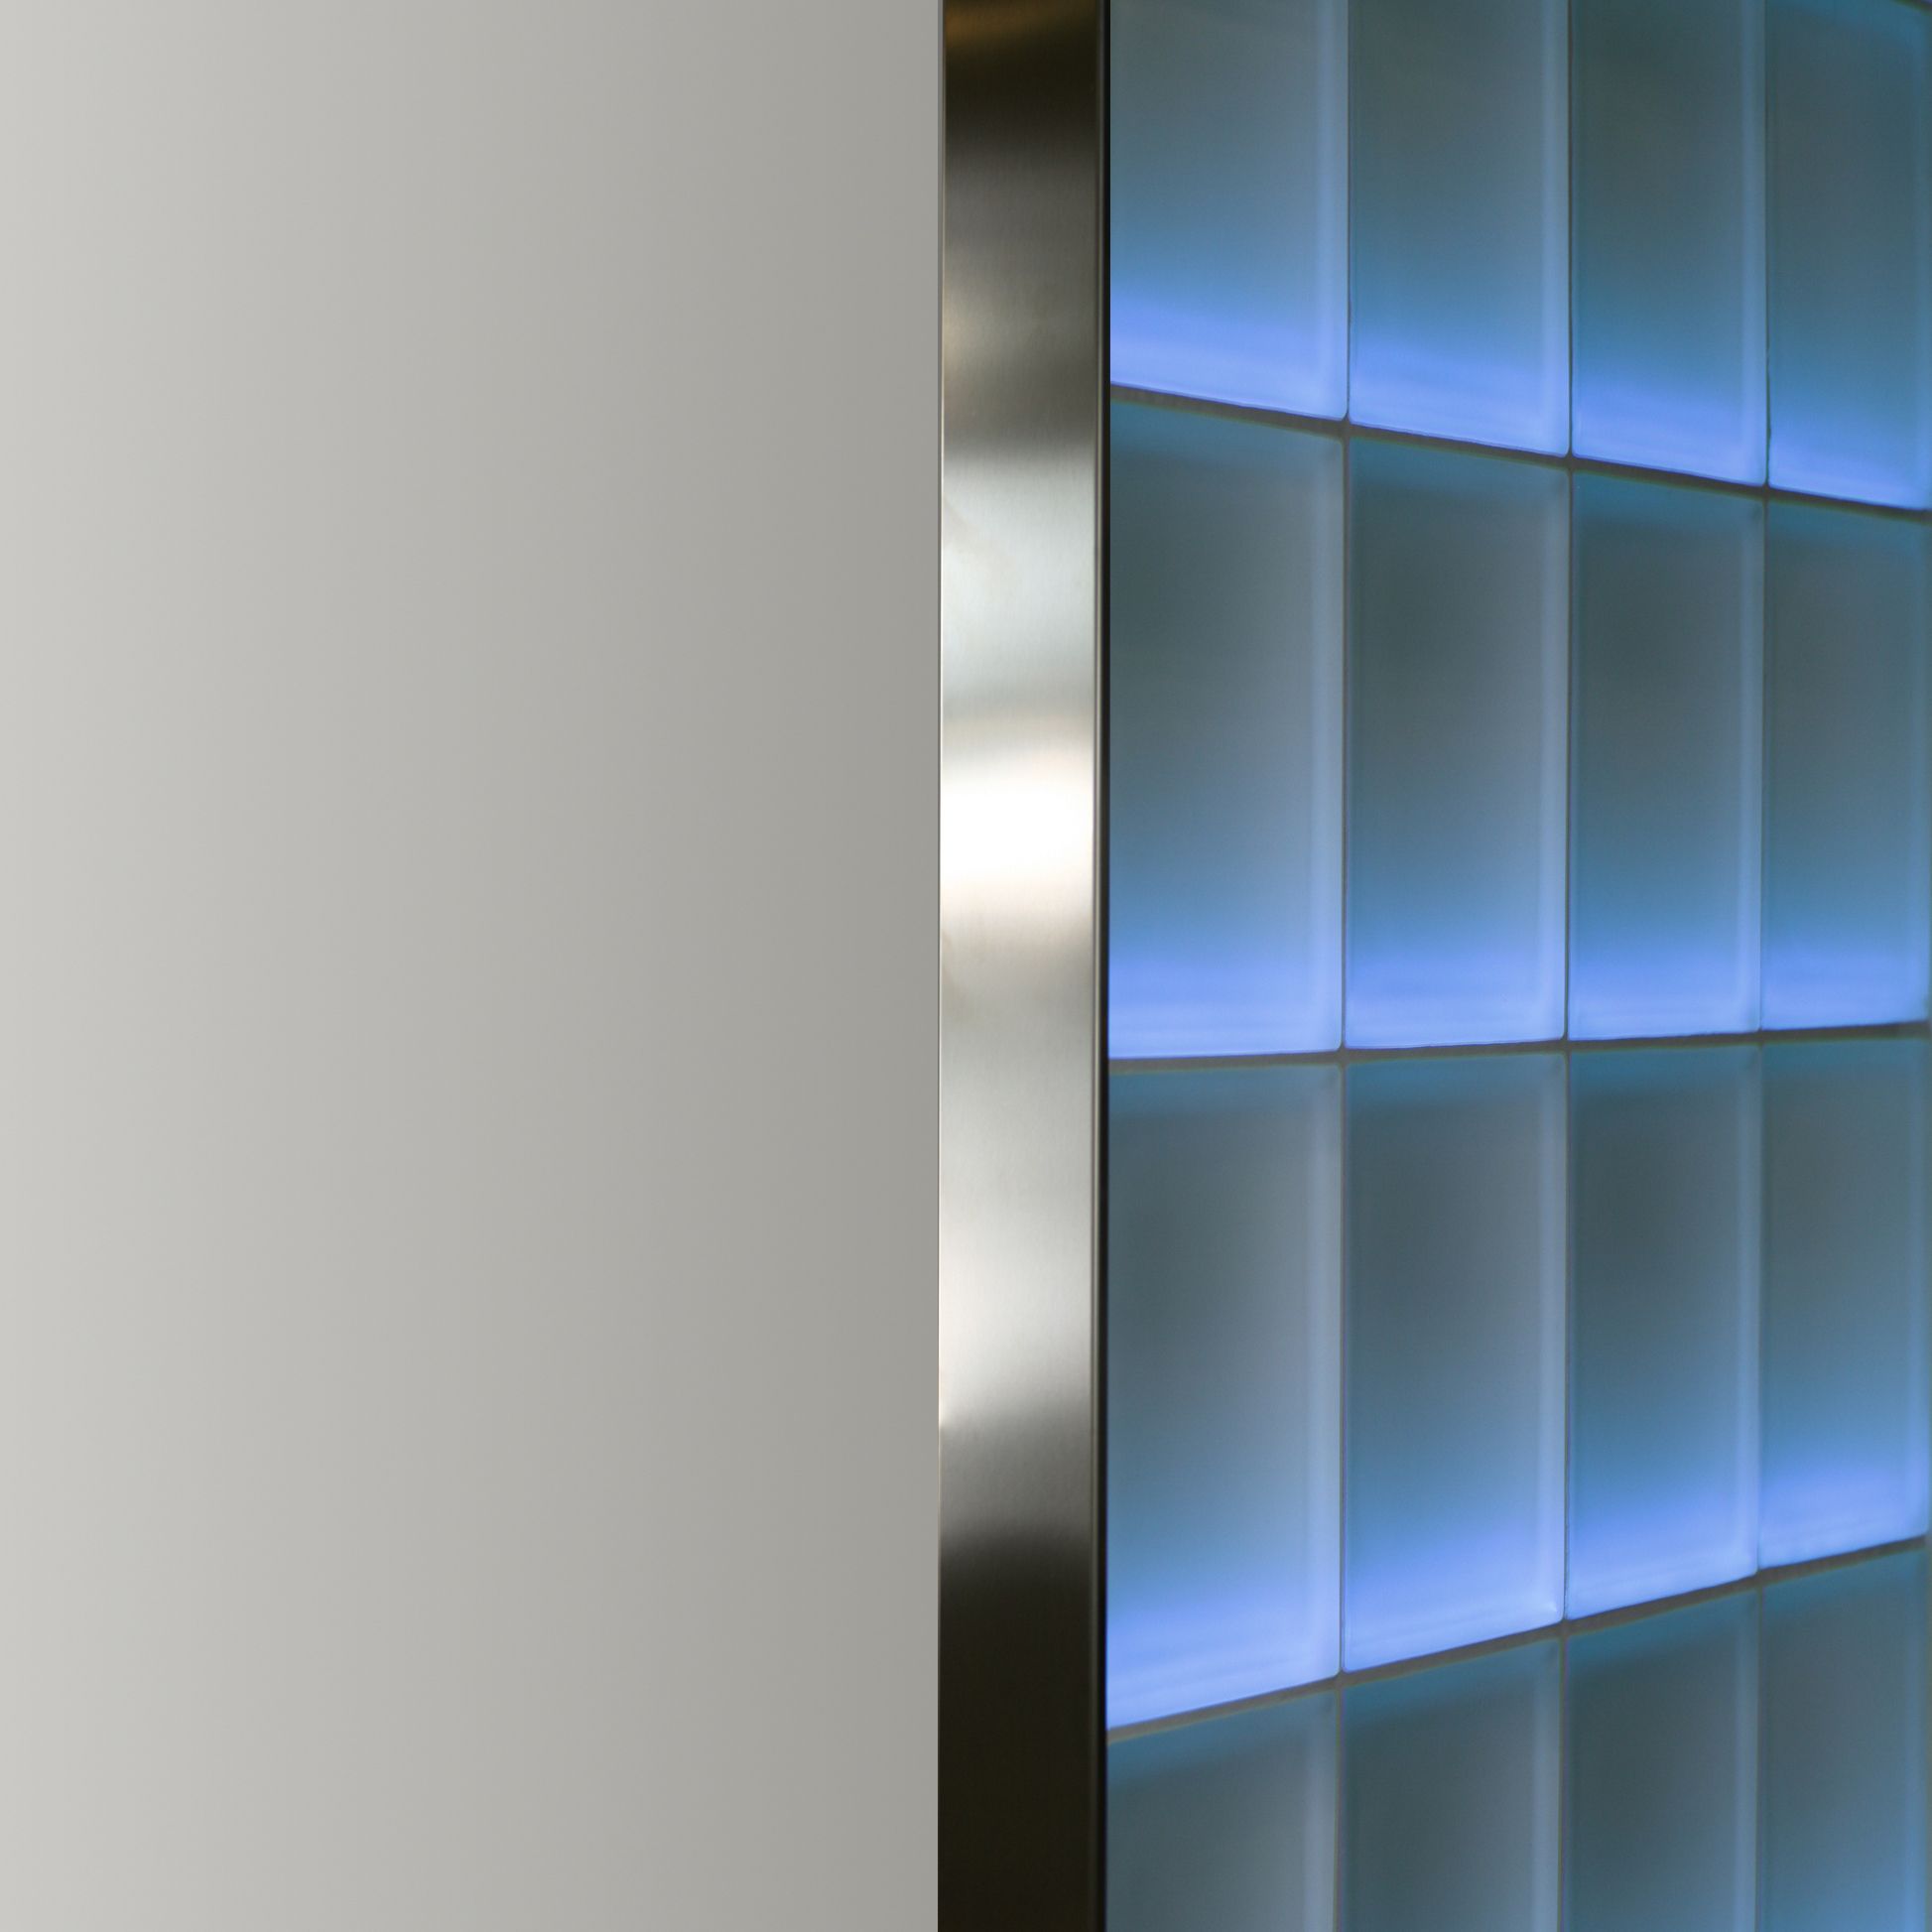 Glasbausteinabschlussprofil für 5 cm starke Glasbausteine – Edelstahl V2A Gebürstet 2,5 m Länge